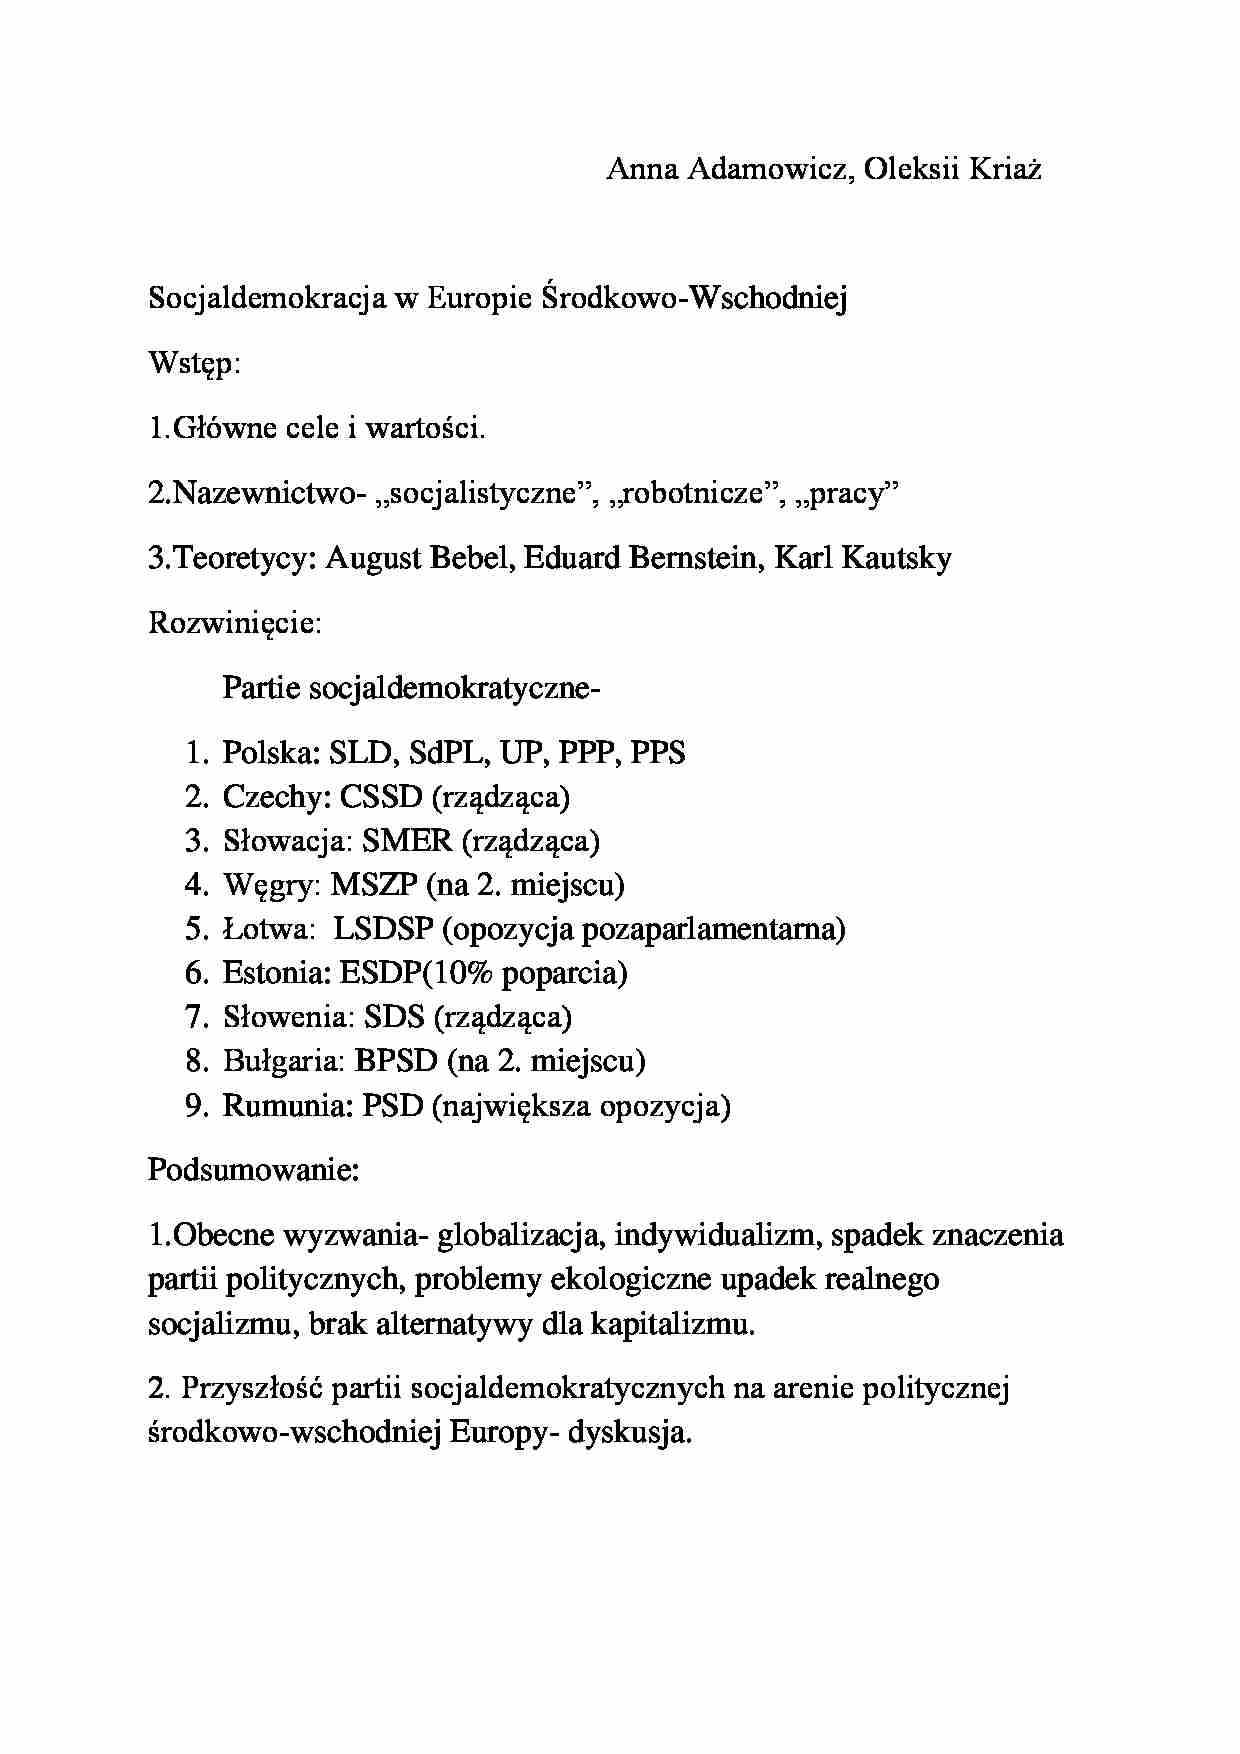 Socjaldemokracja w Europie Środkowo-Wschodniej-opracowanie - strona 1